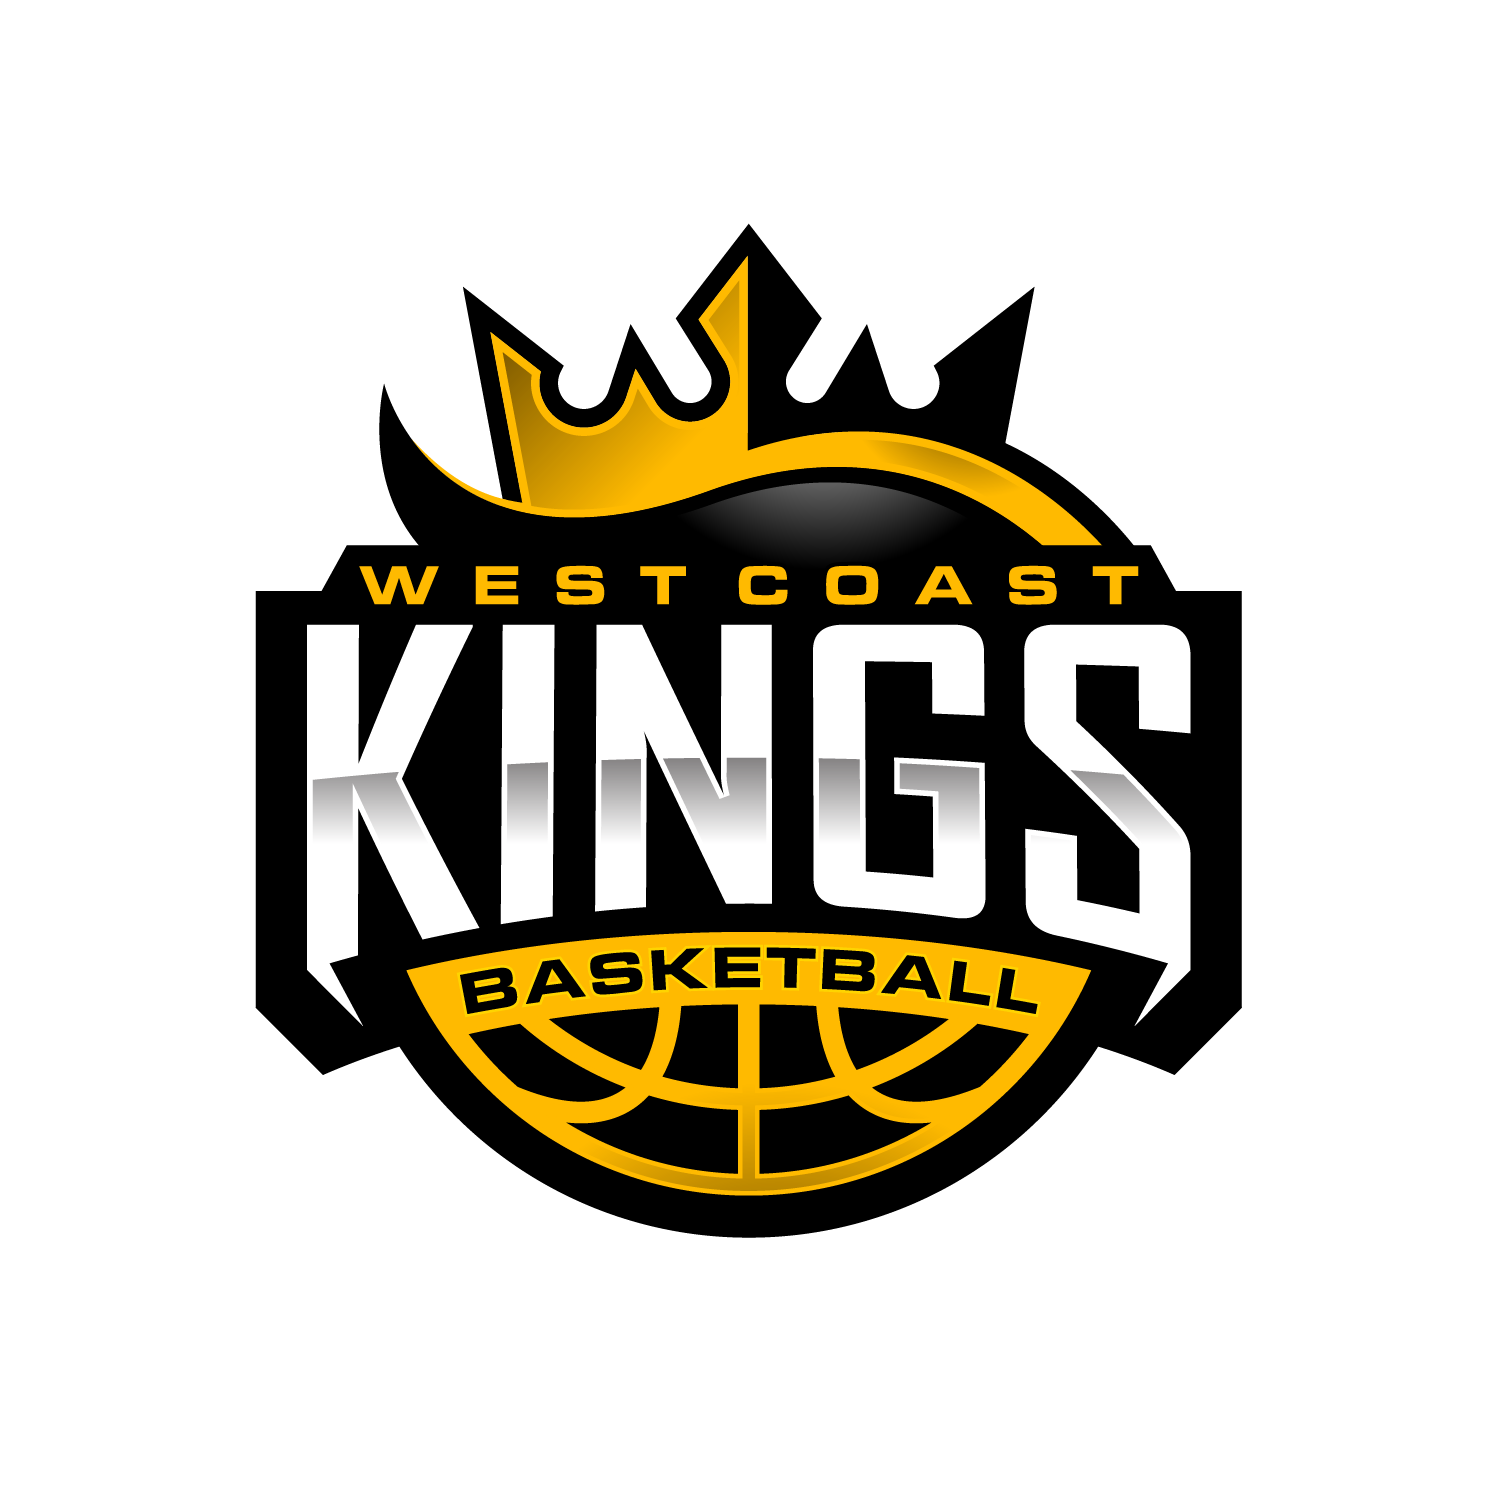 West Coast Kings Basketball